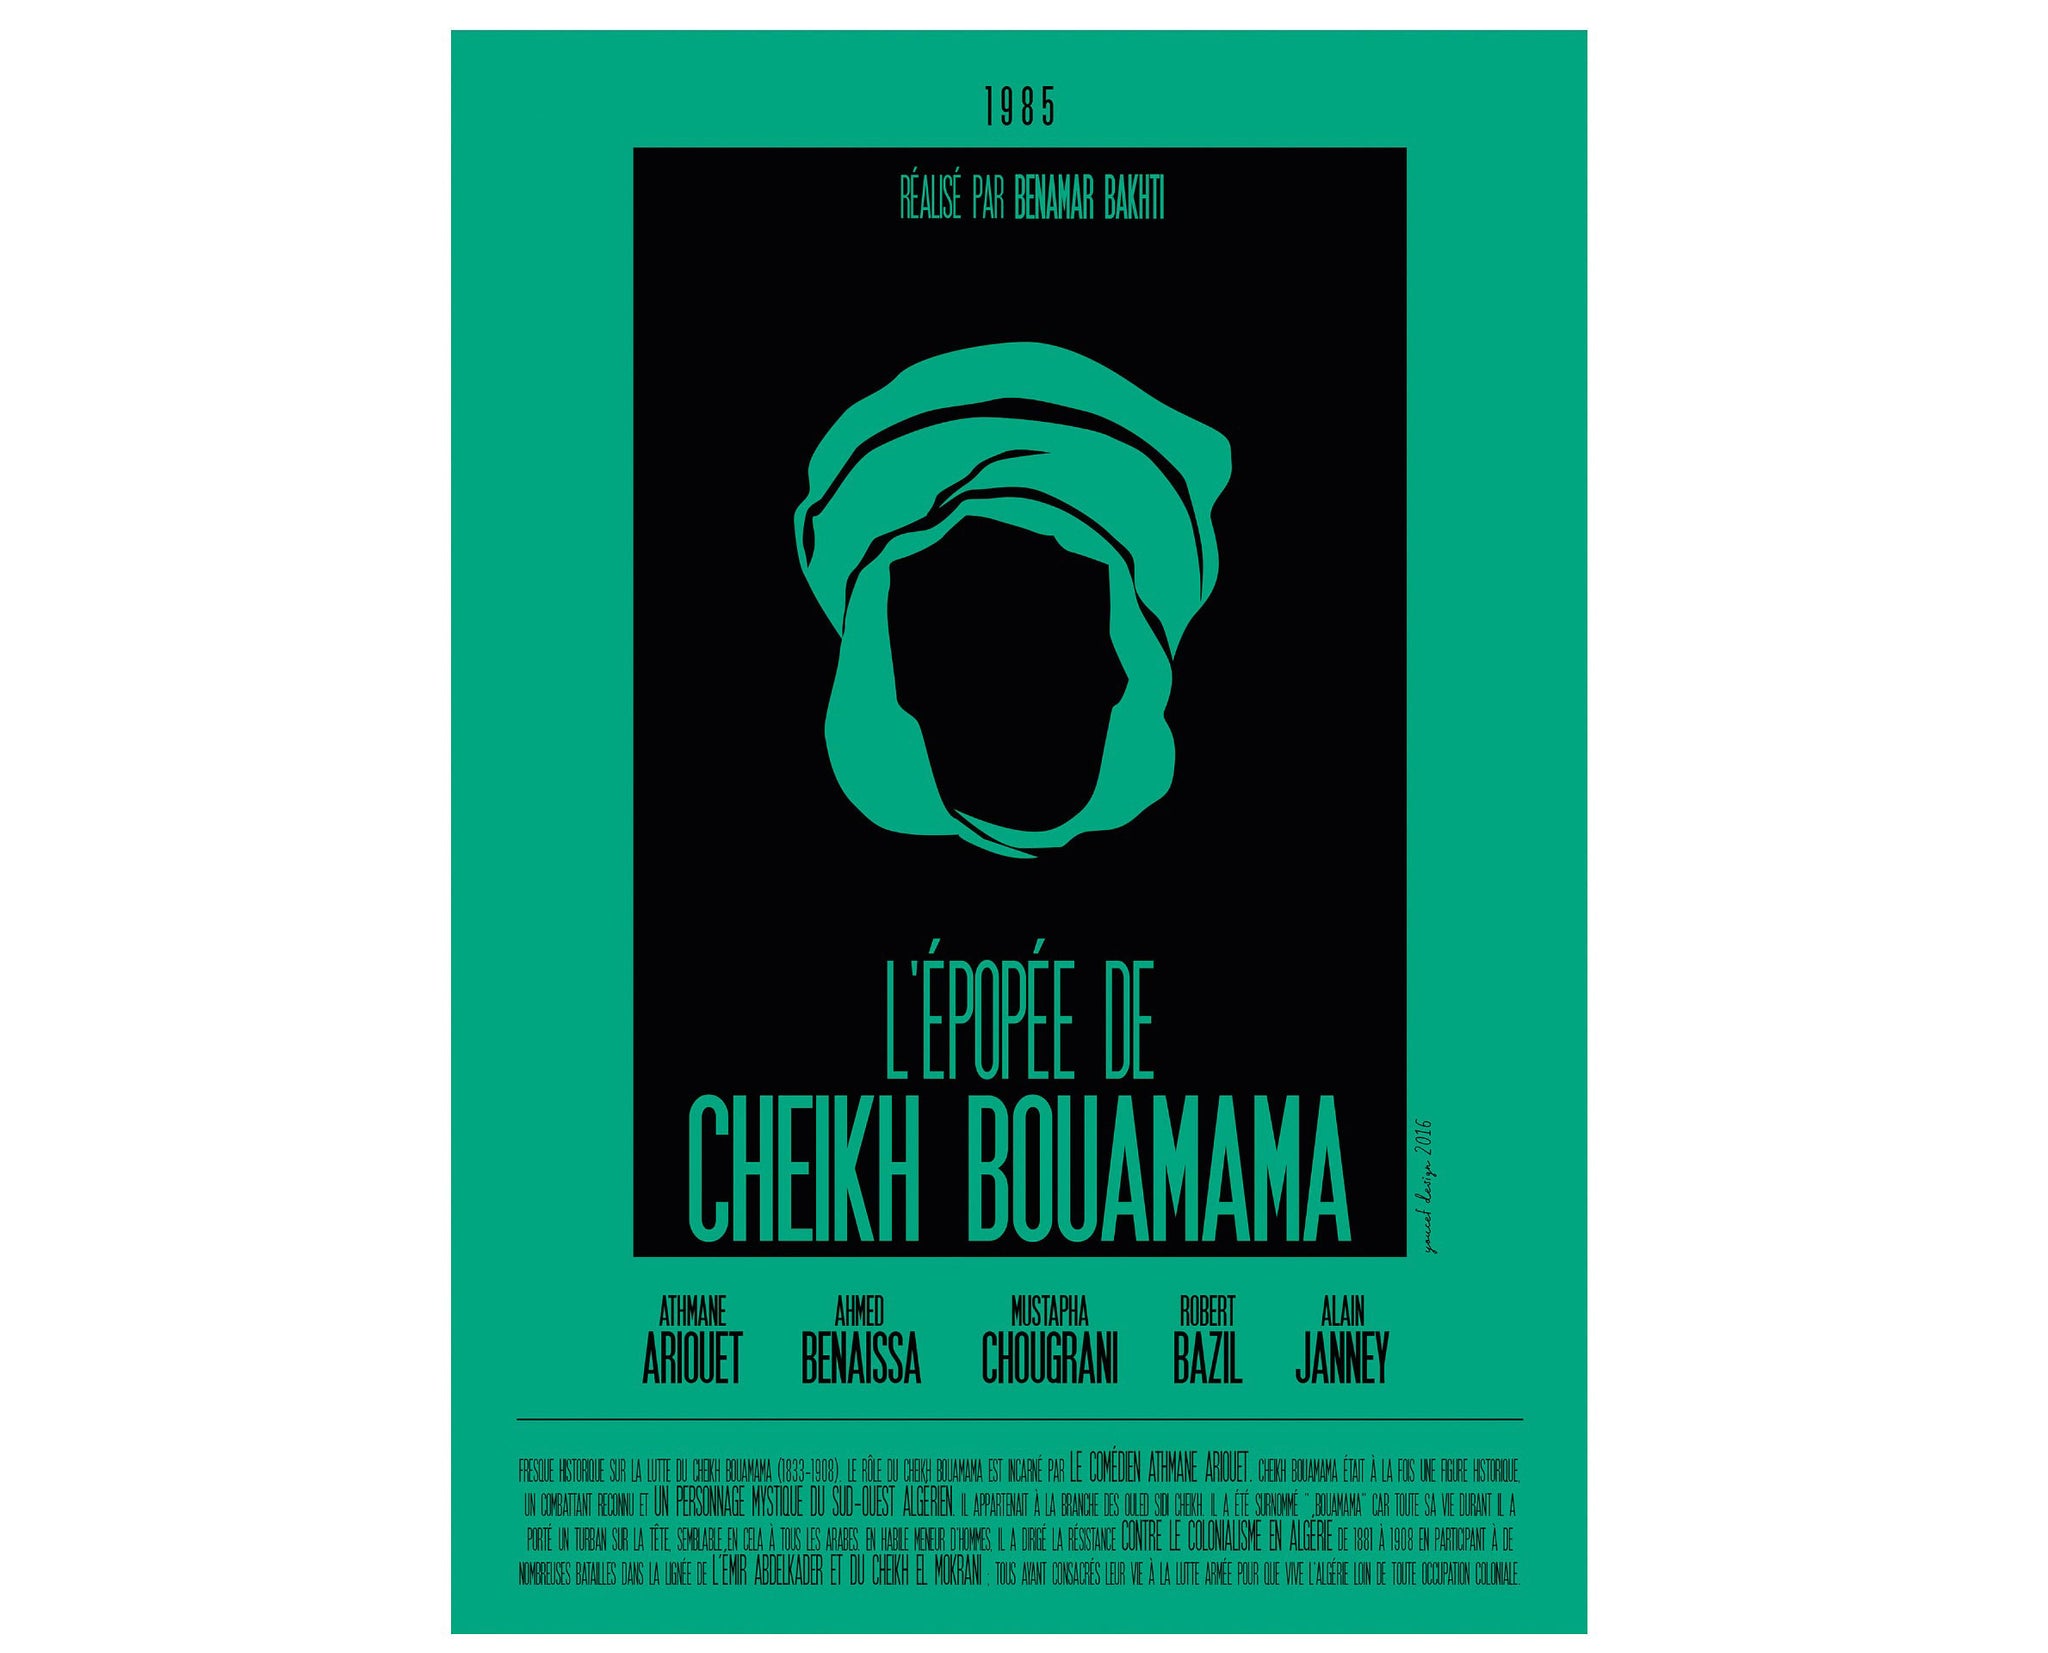 L'Épopée de Cheikh Bouamama